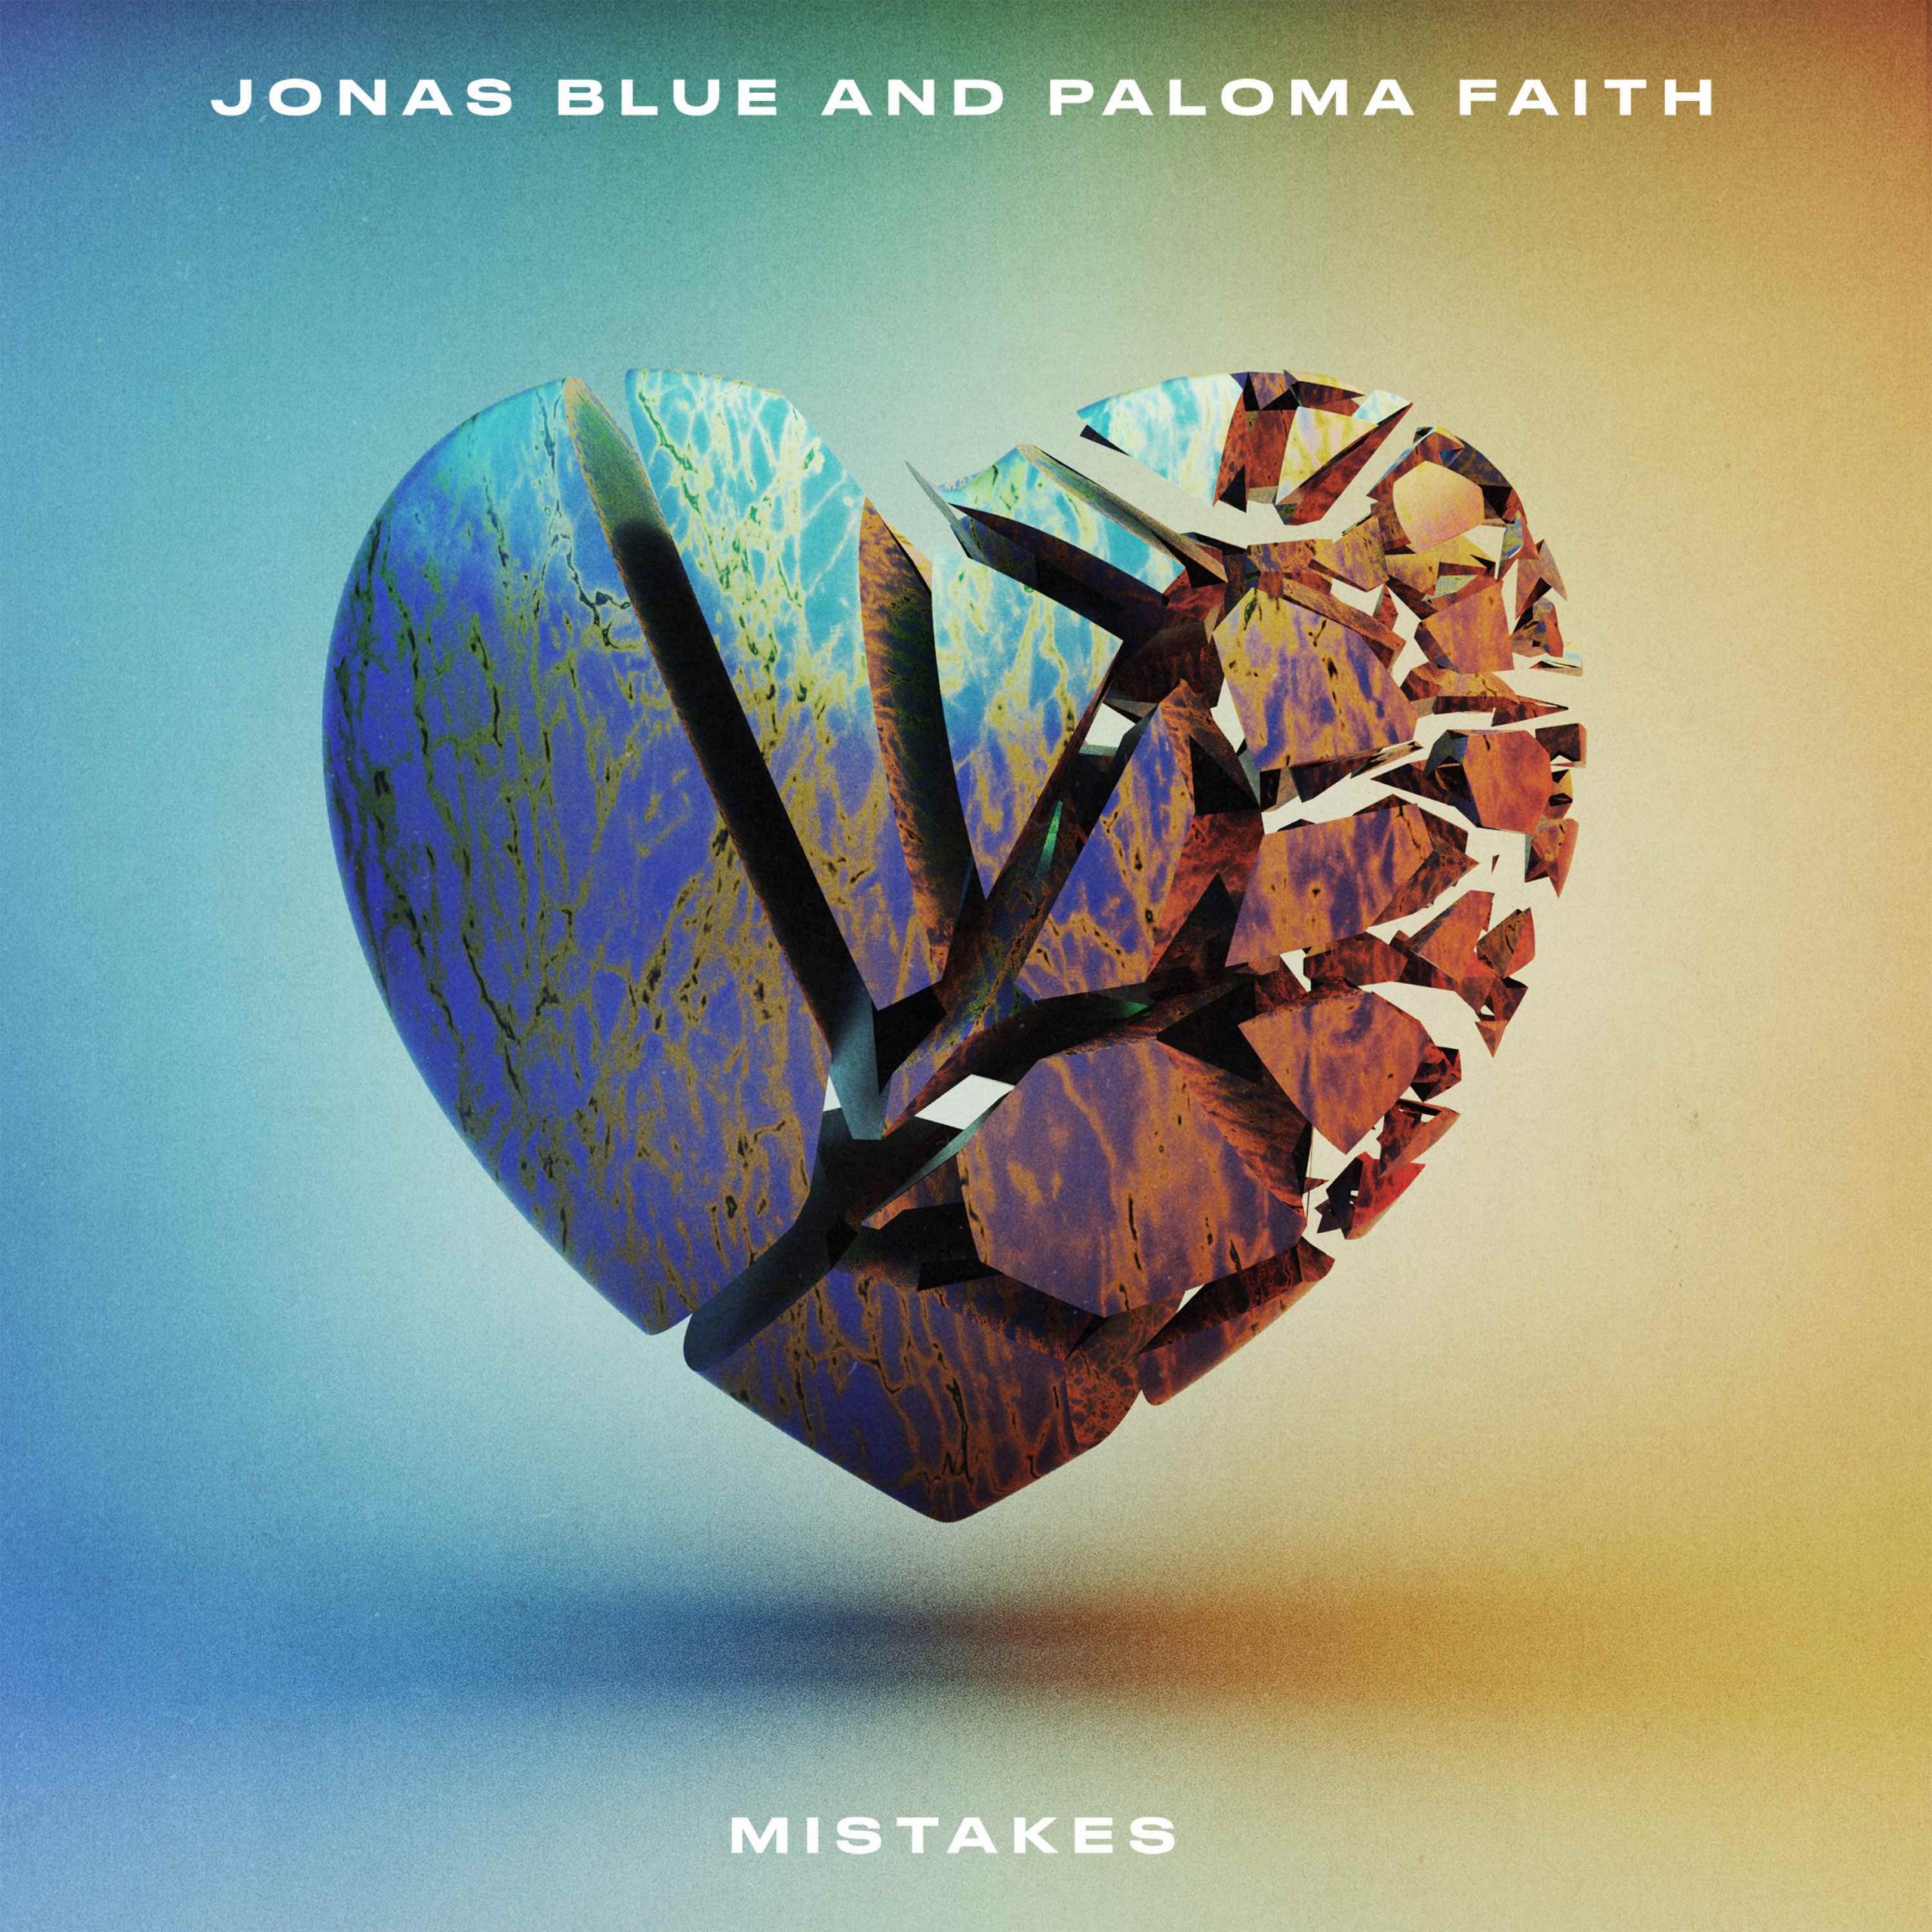 Jonas Blue and Paloma Faith - "Mistakes" official single artwork